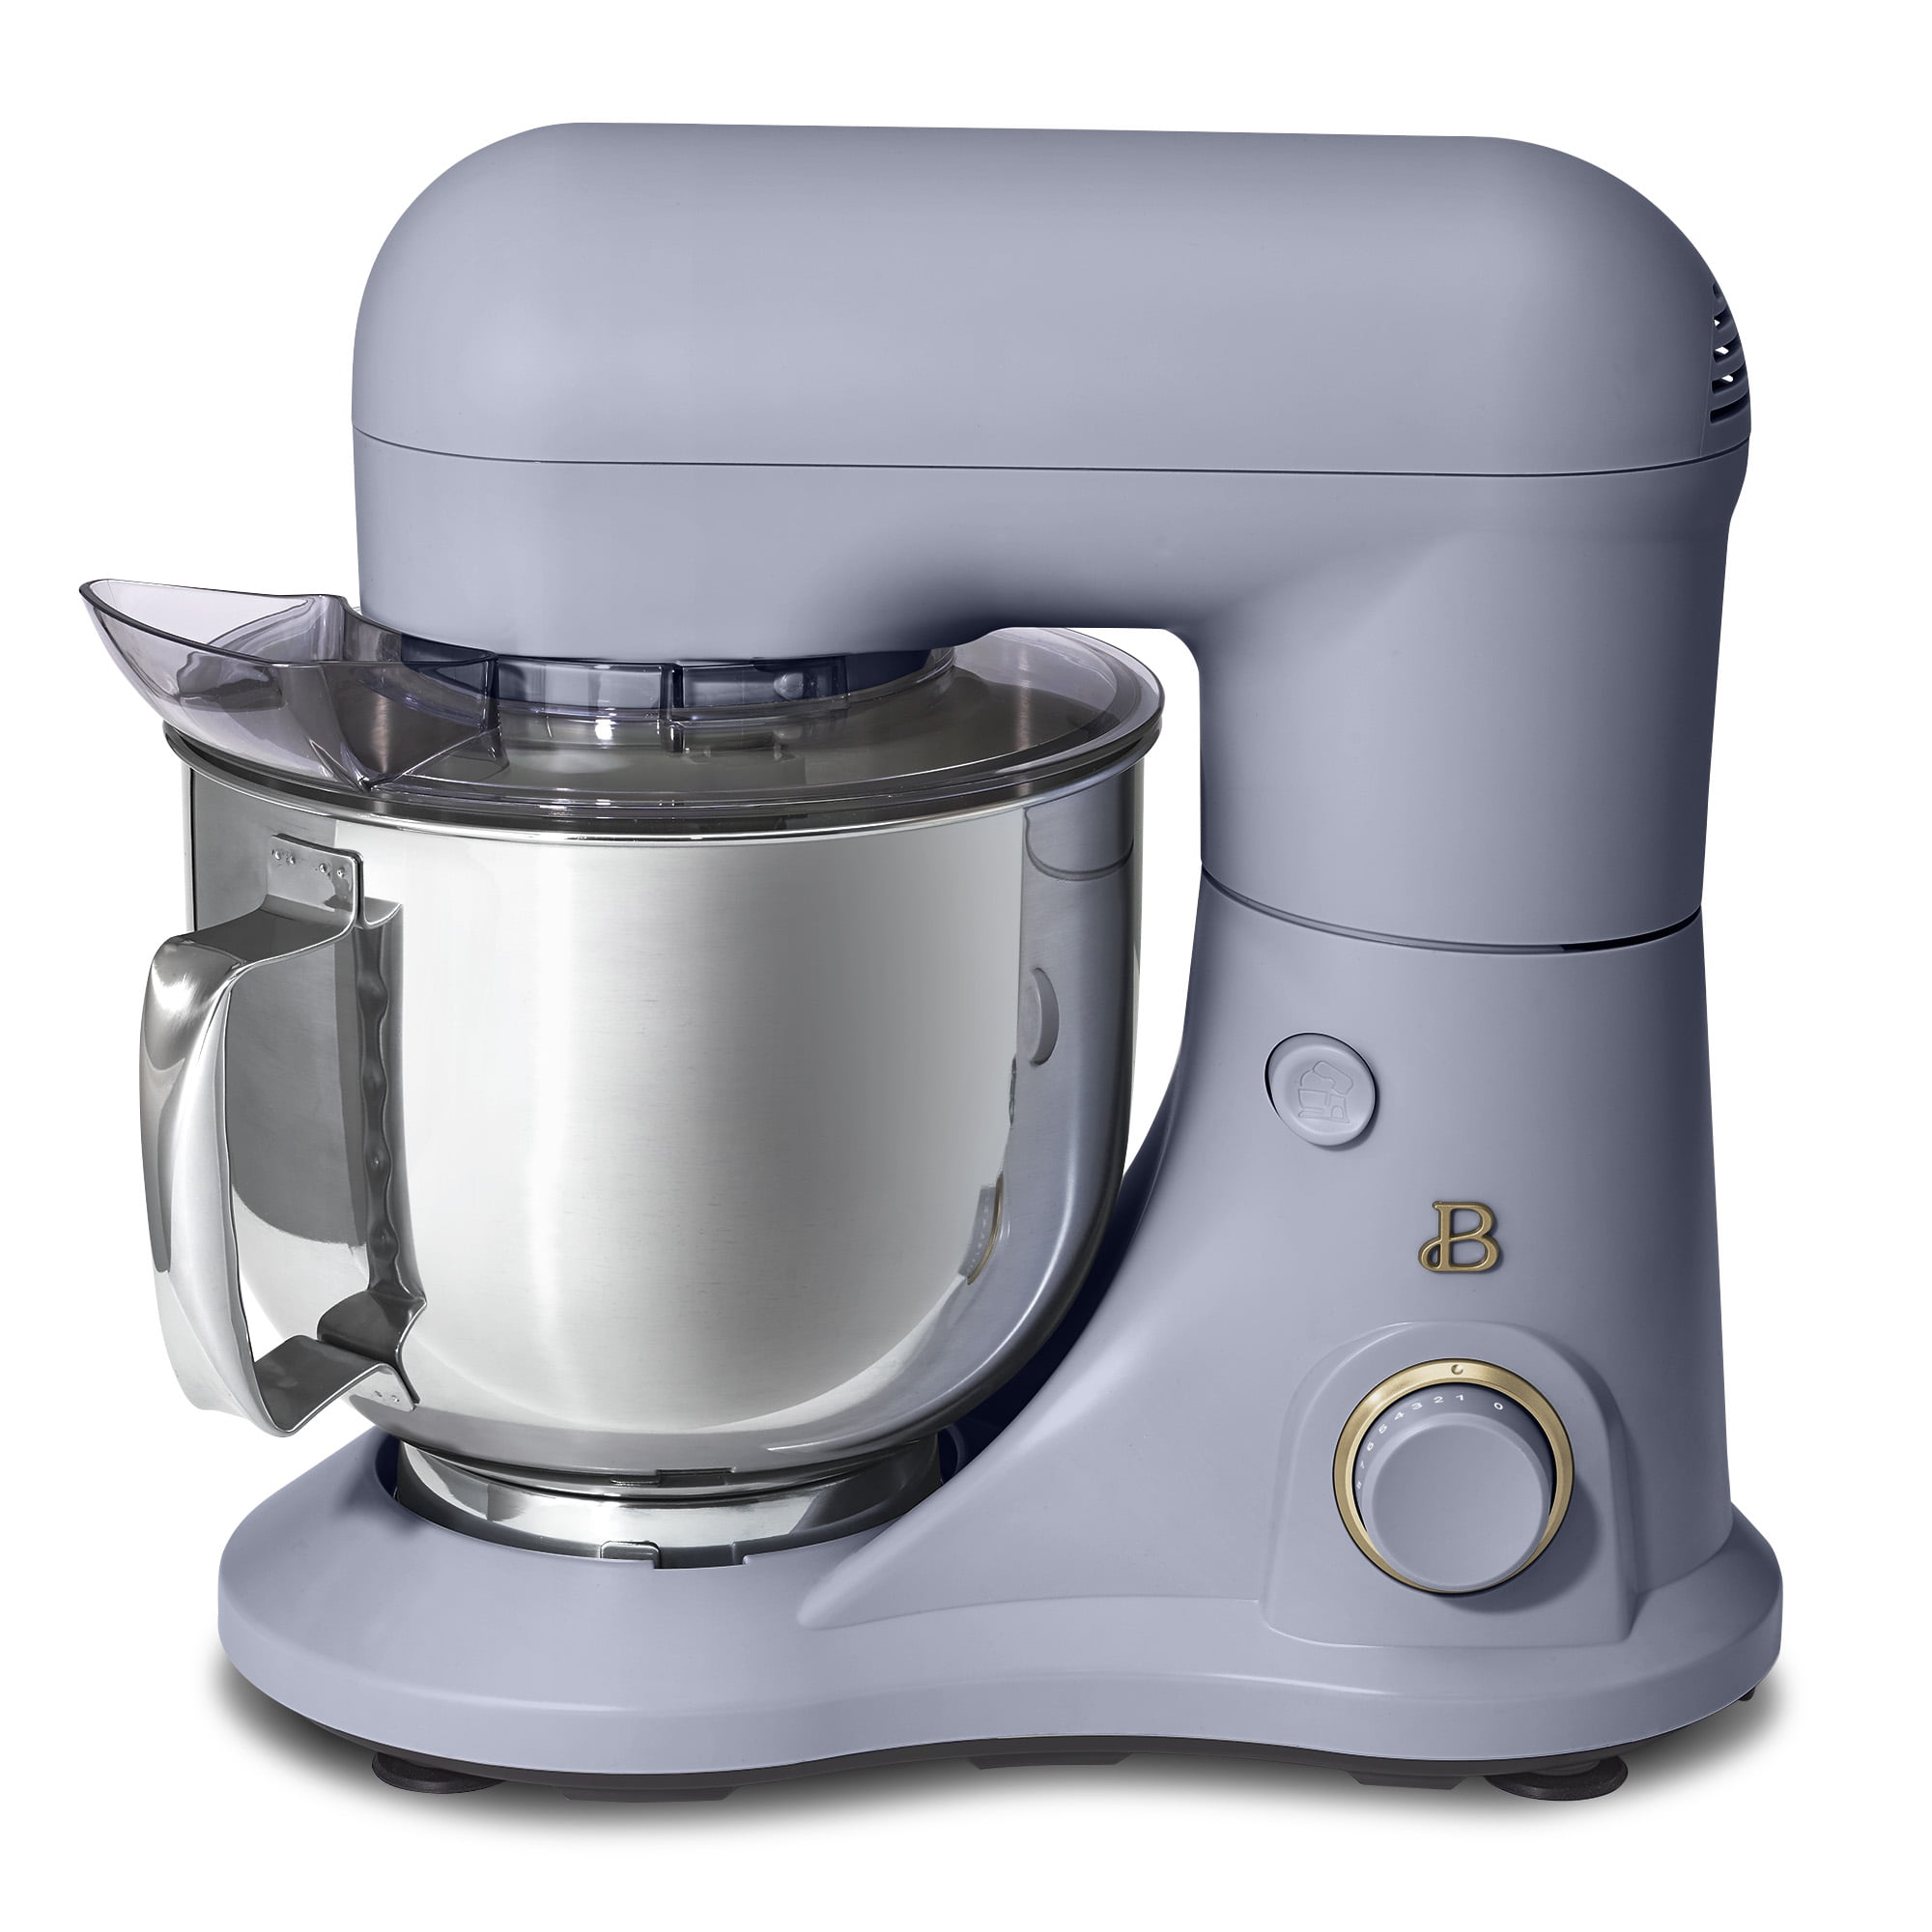 Cuisinart® Precision Master™ 5.5 qt. Tilt-Back Head Stand Mixer in Arctic  Blue, 5.5 Qt - Foods Co.